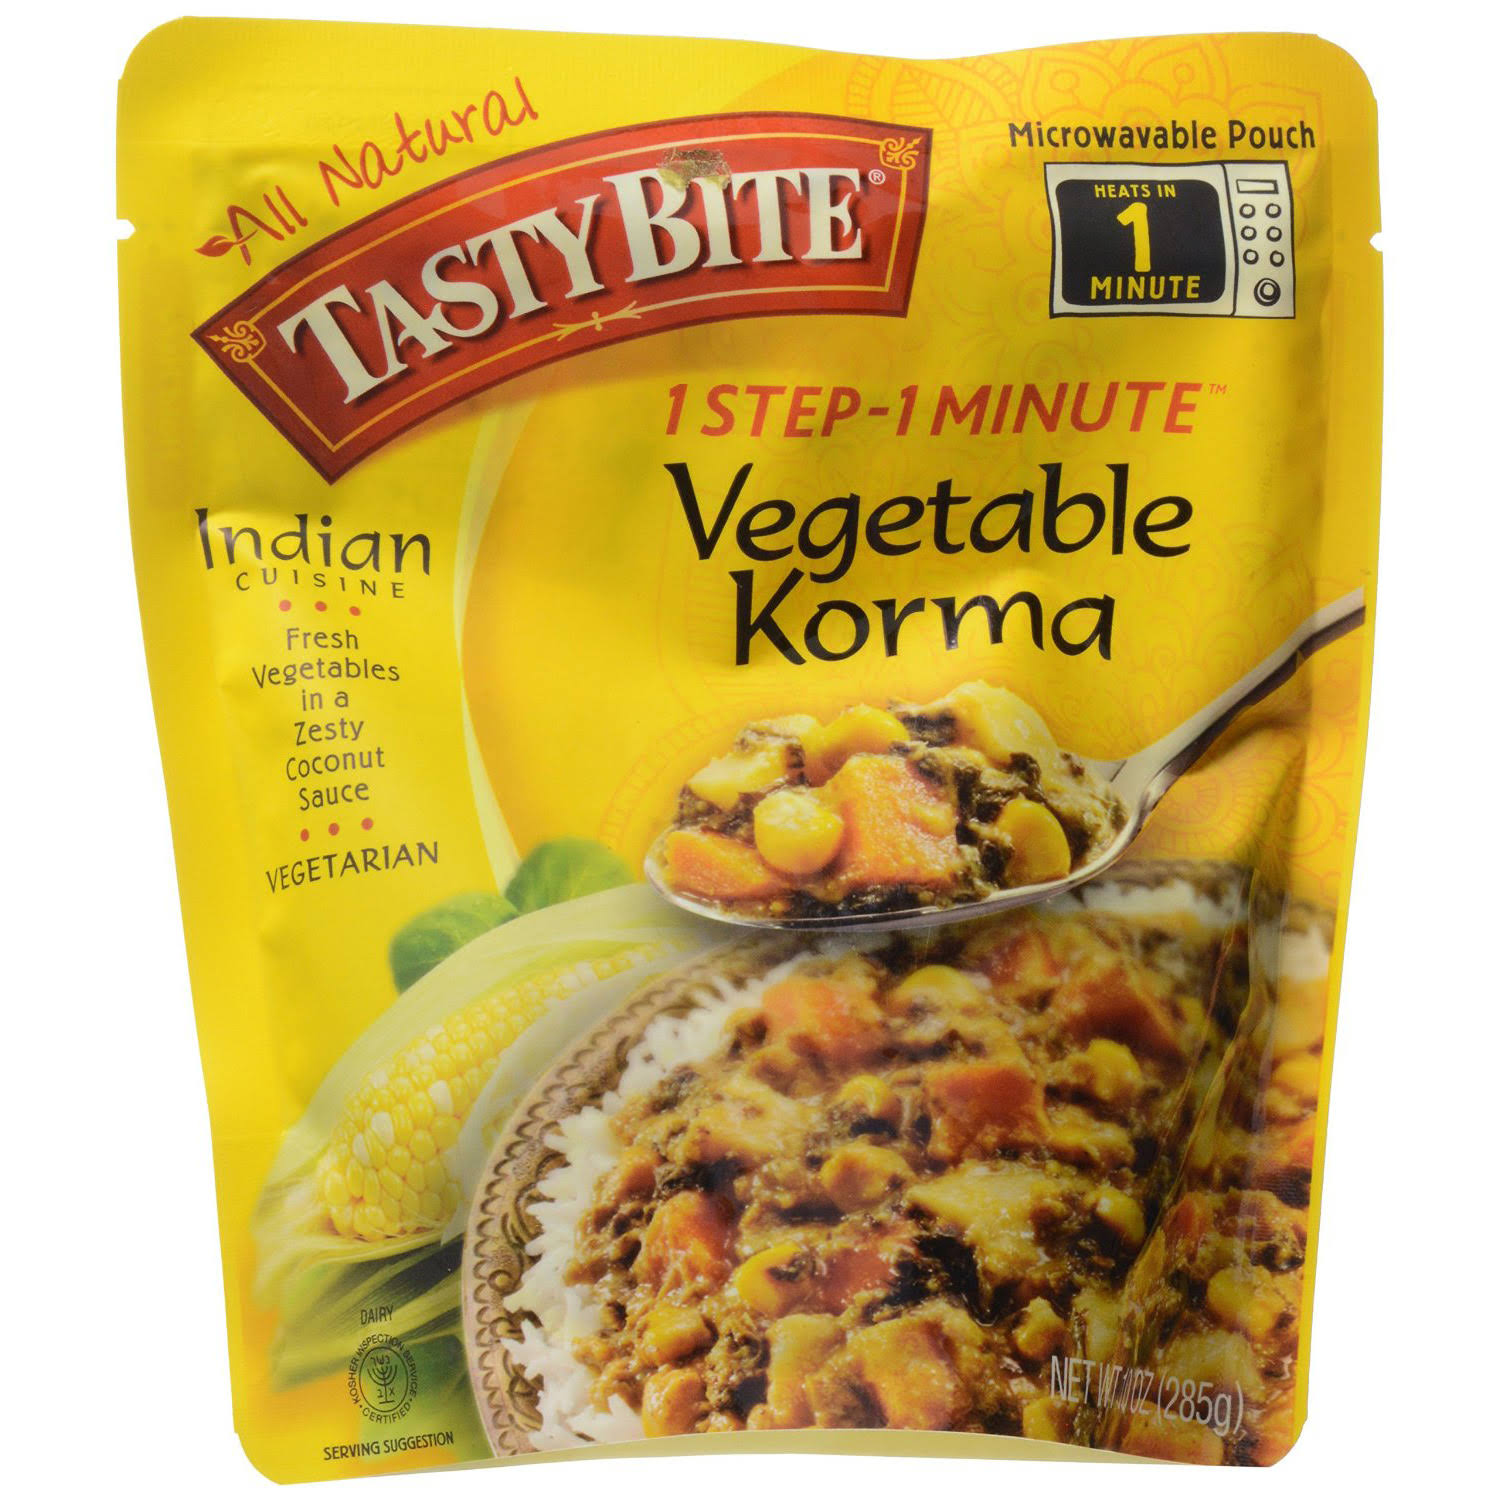 Tasty Bite Vegetable Korma Entree - 285g